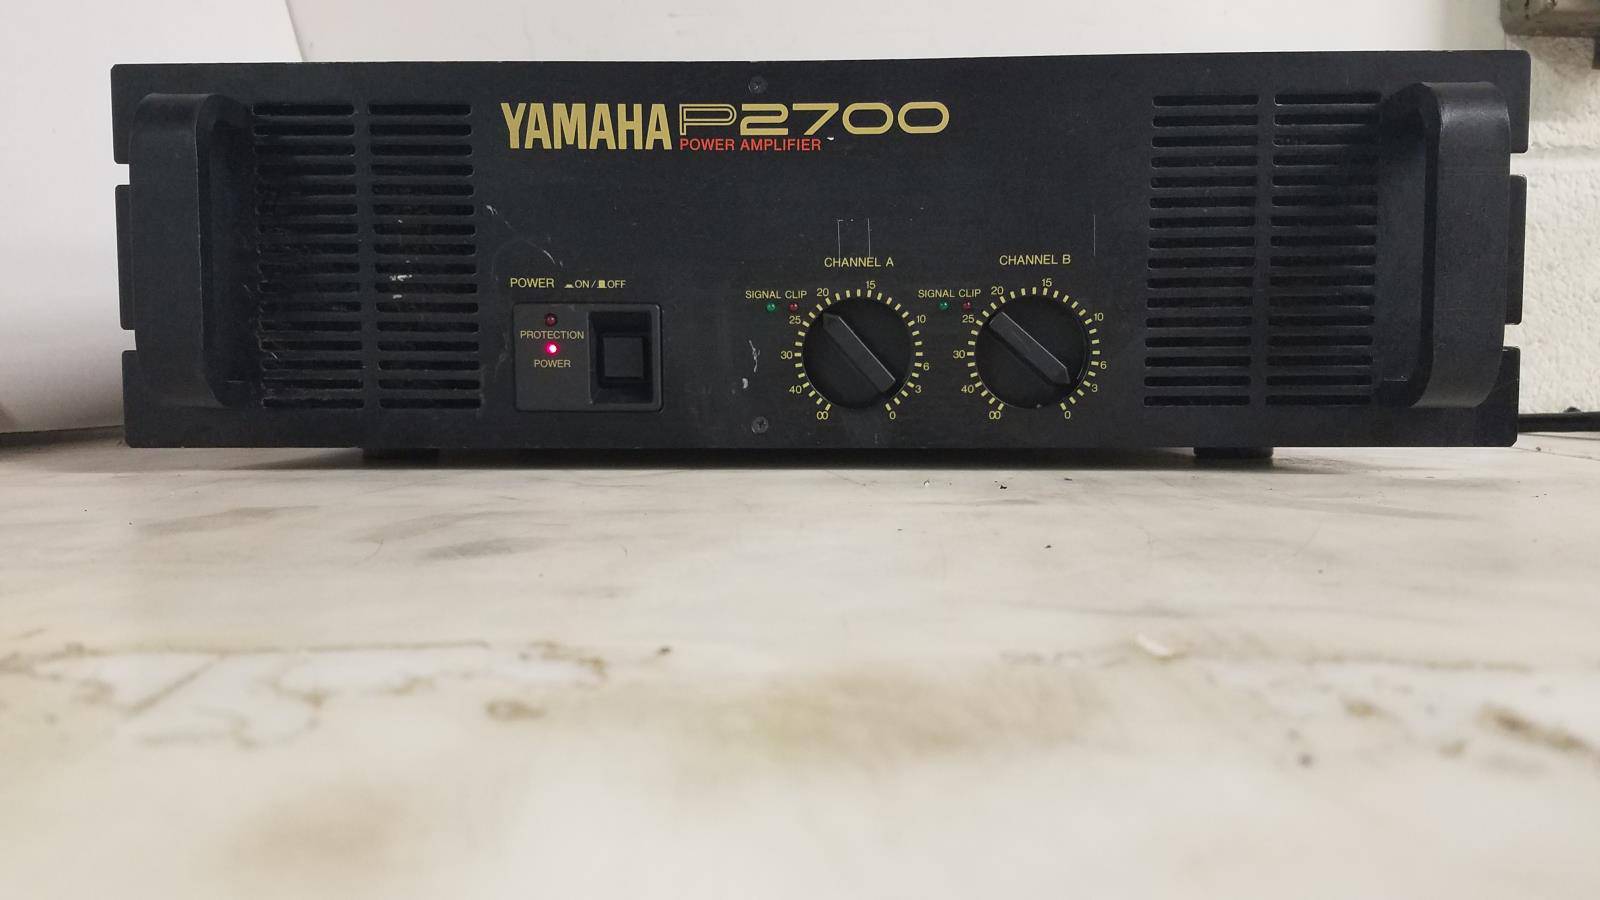 Yamaha P2700